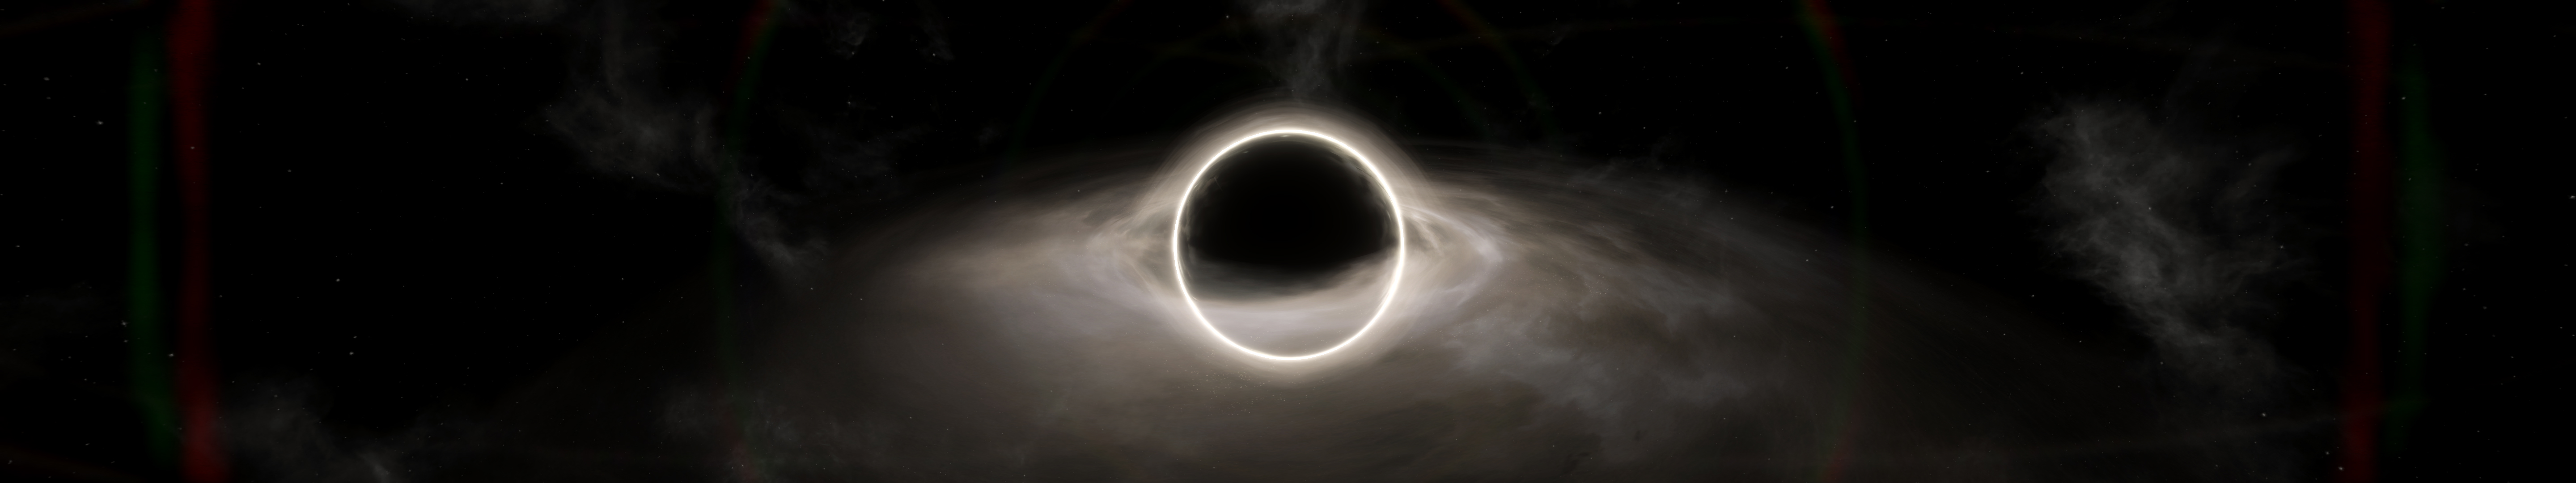 General 5760x1080 stellaris black holes multiple display space art space digital art